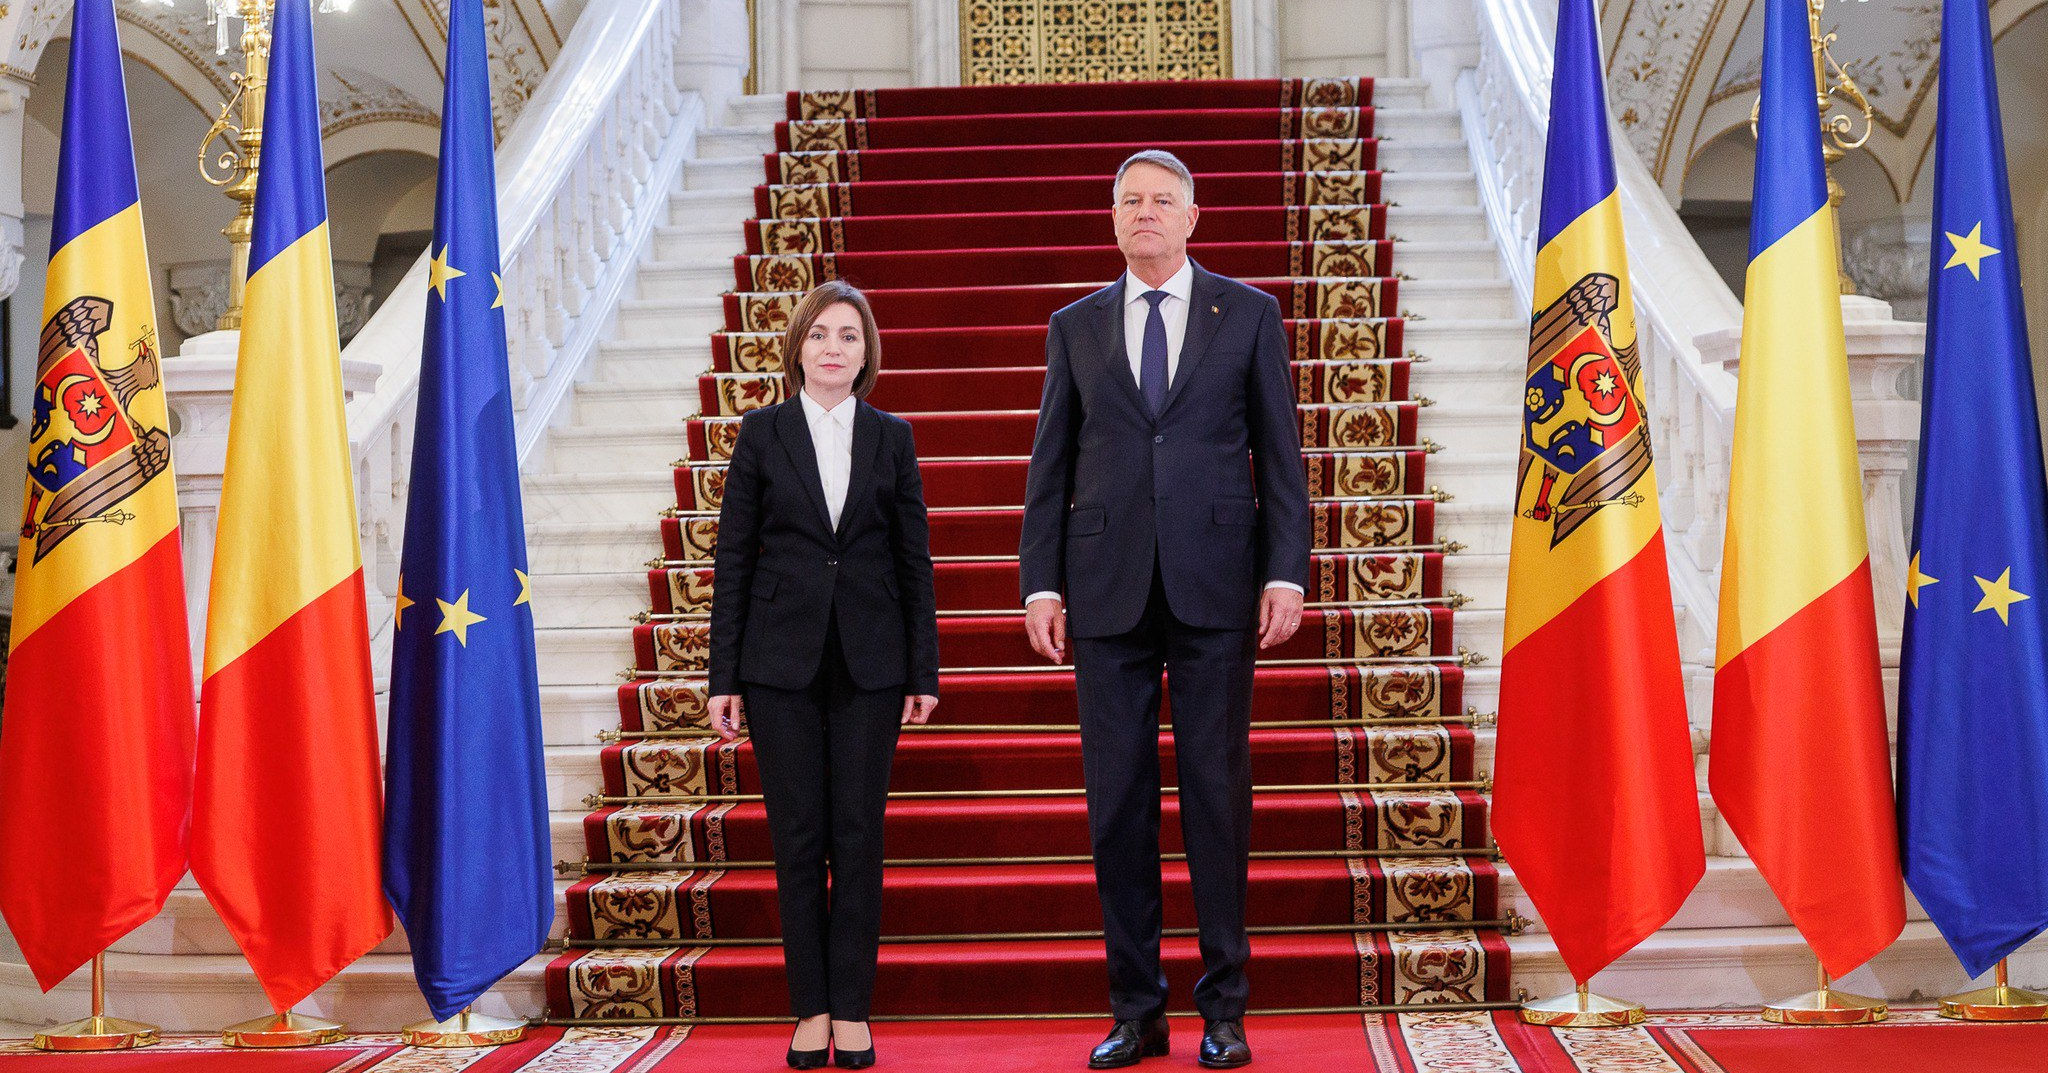 Санду: Румынию любят в Молдове, мы связаны прошлым и будущим.